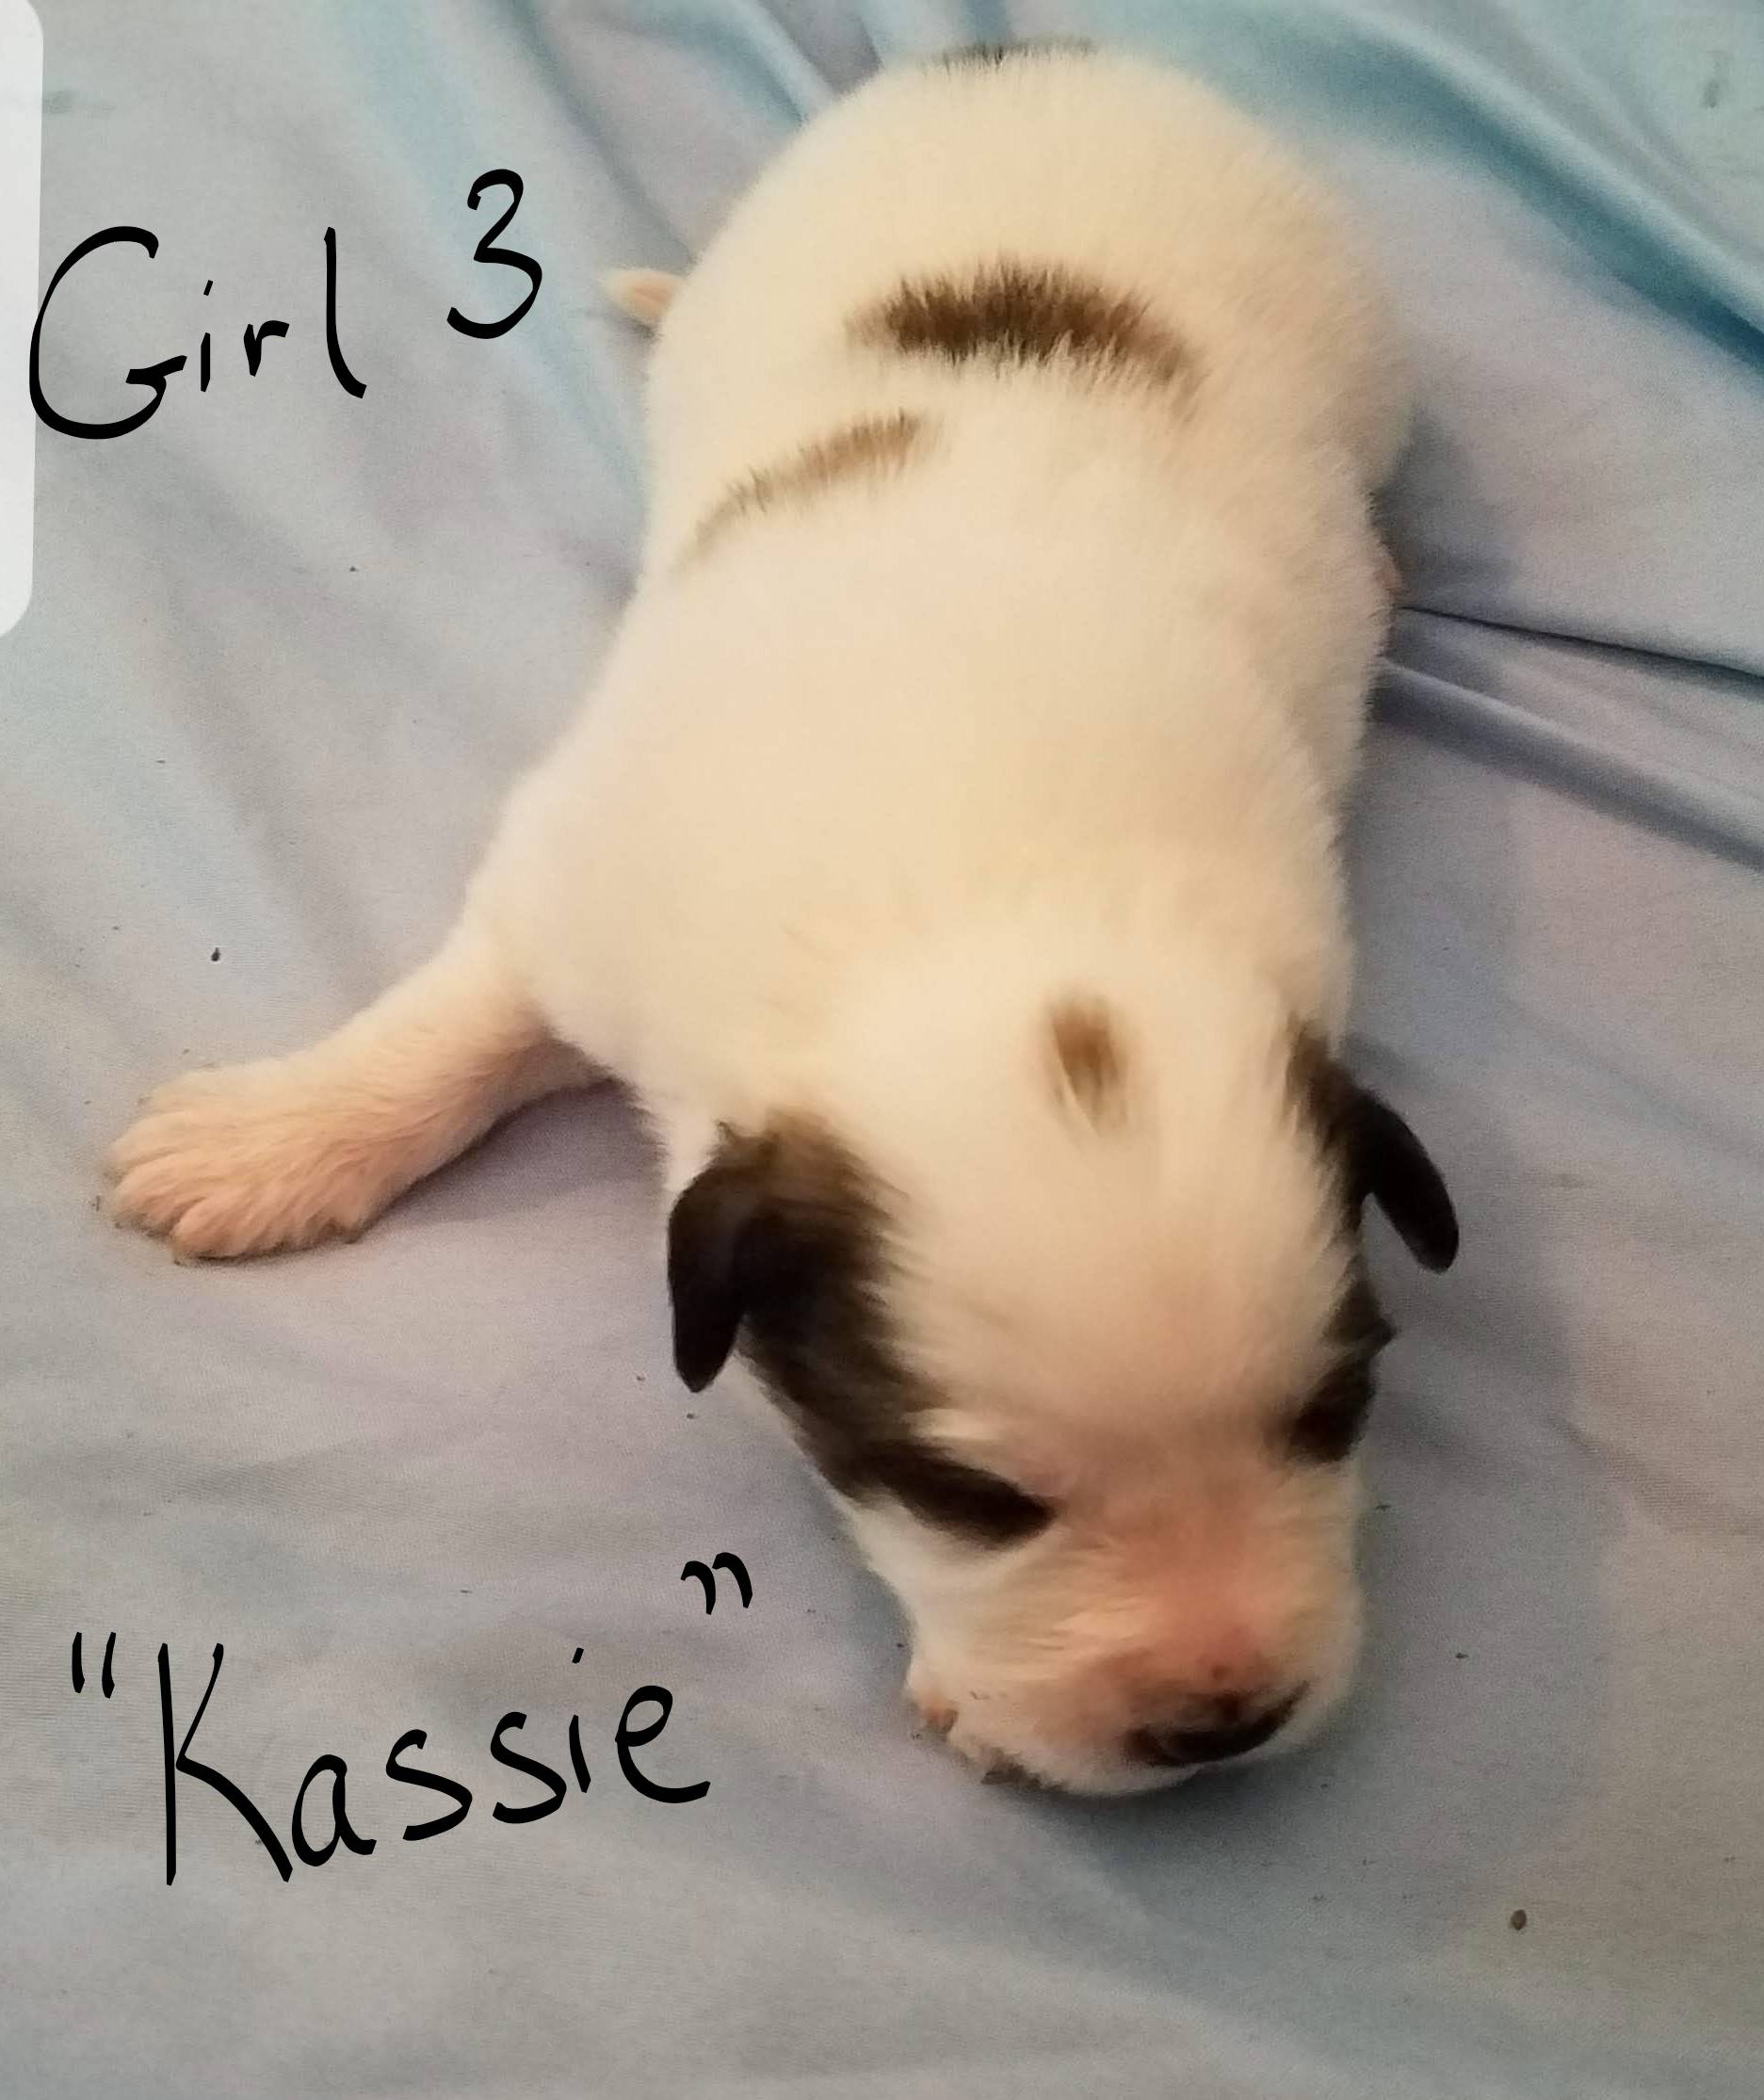 Girl 3 - "Kassie"